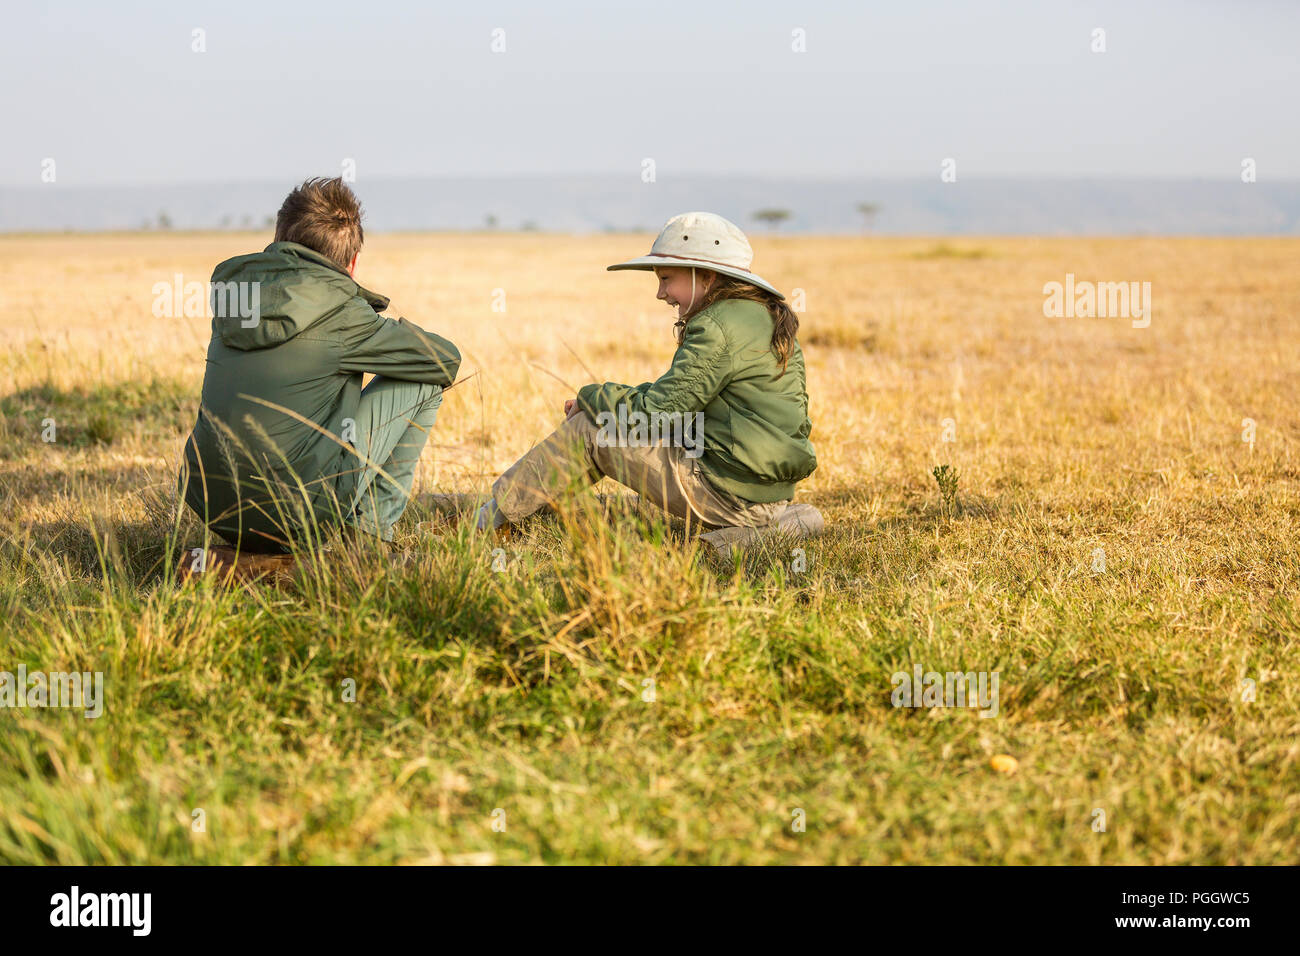 Los niños hermano y hermana en safari africano vacaciones disfrutando de la vista de Bush Foto de stock